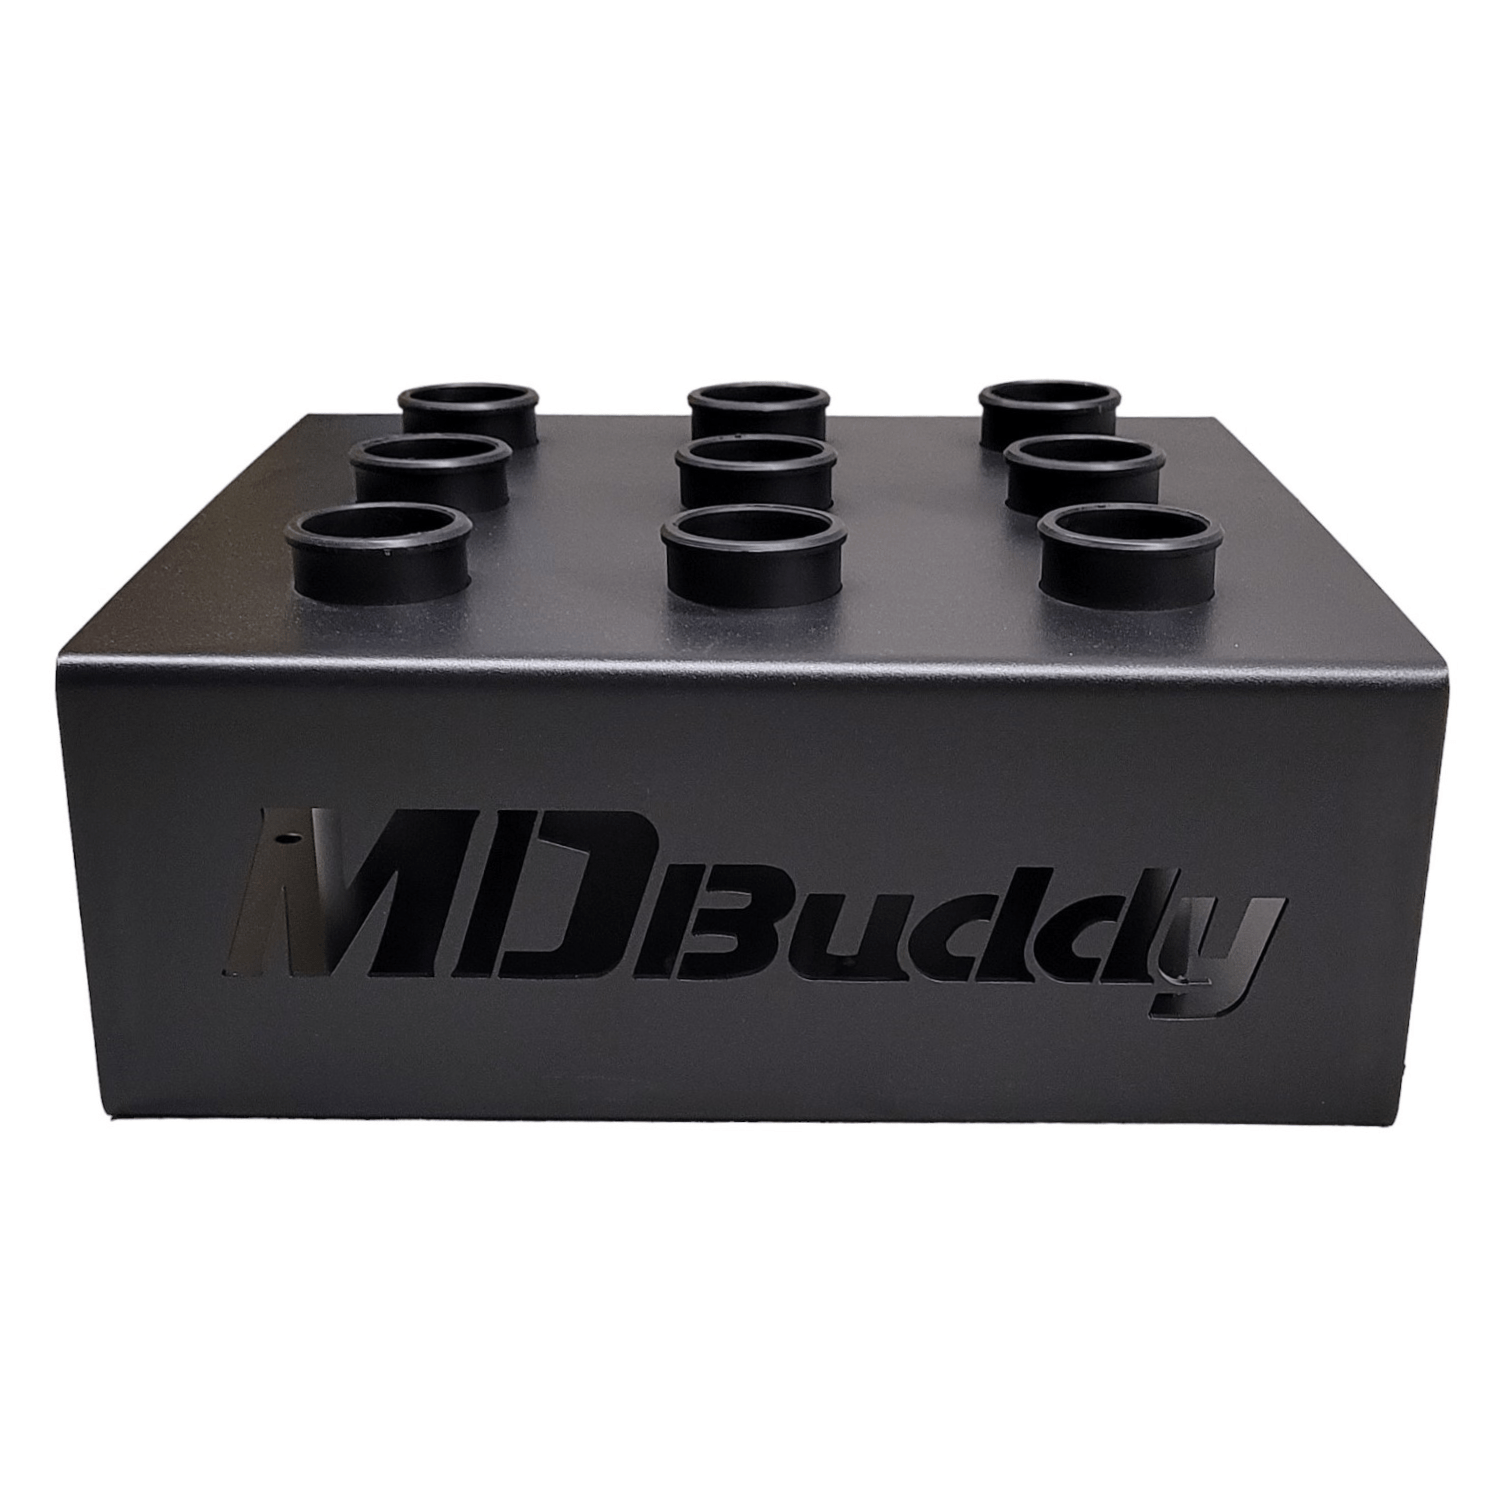 MD Buddy Bar Holder - (9 Piece)-Olympic Barbell Storage-MD Buddy-2